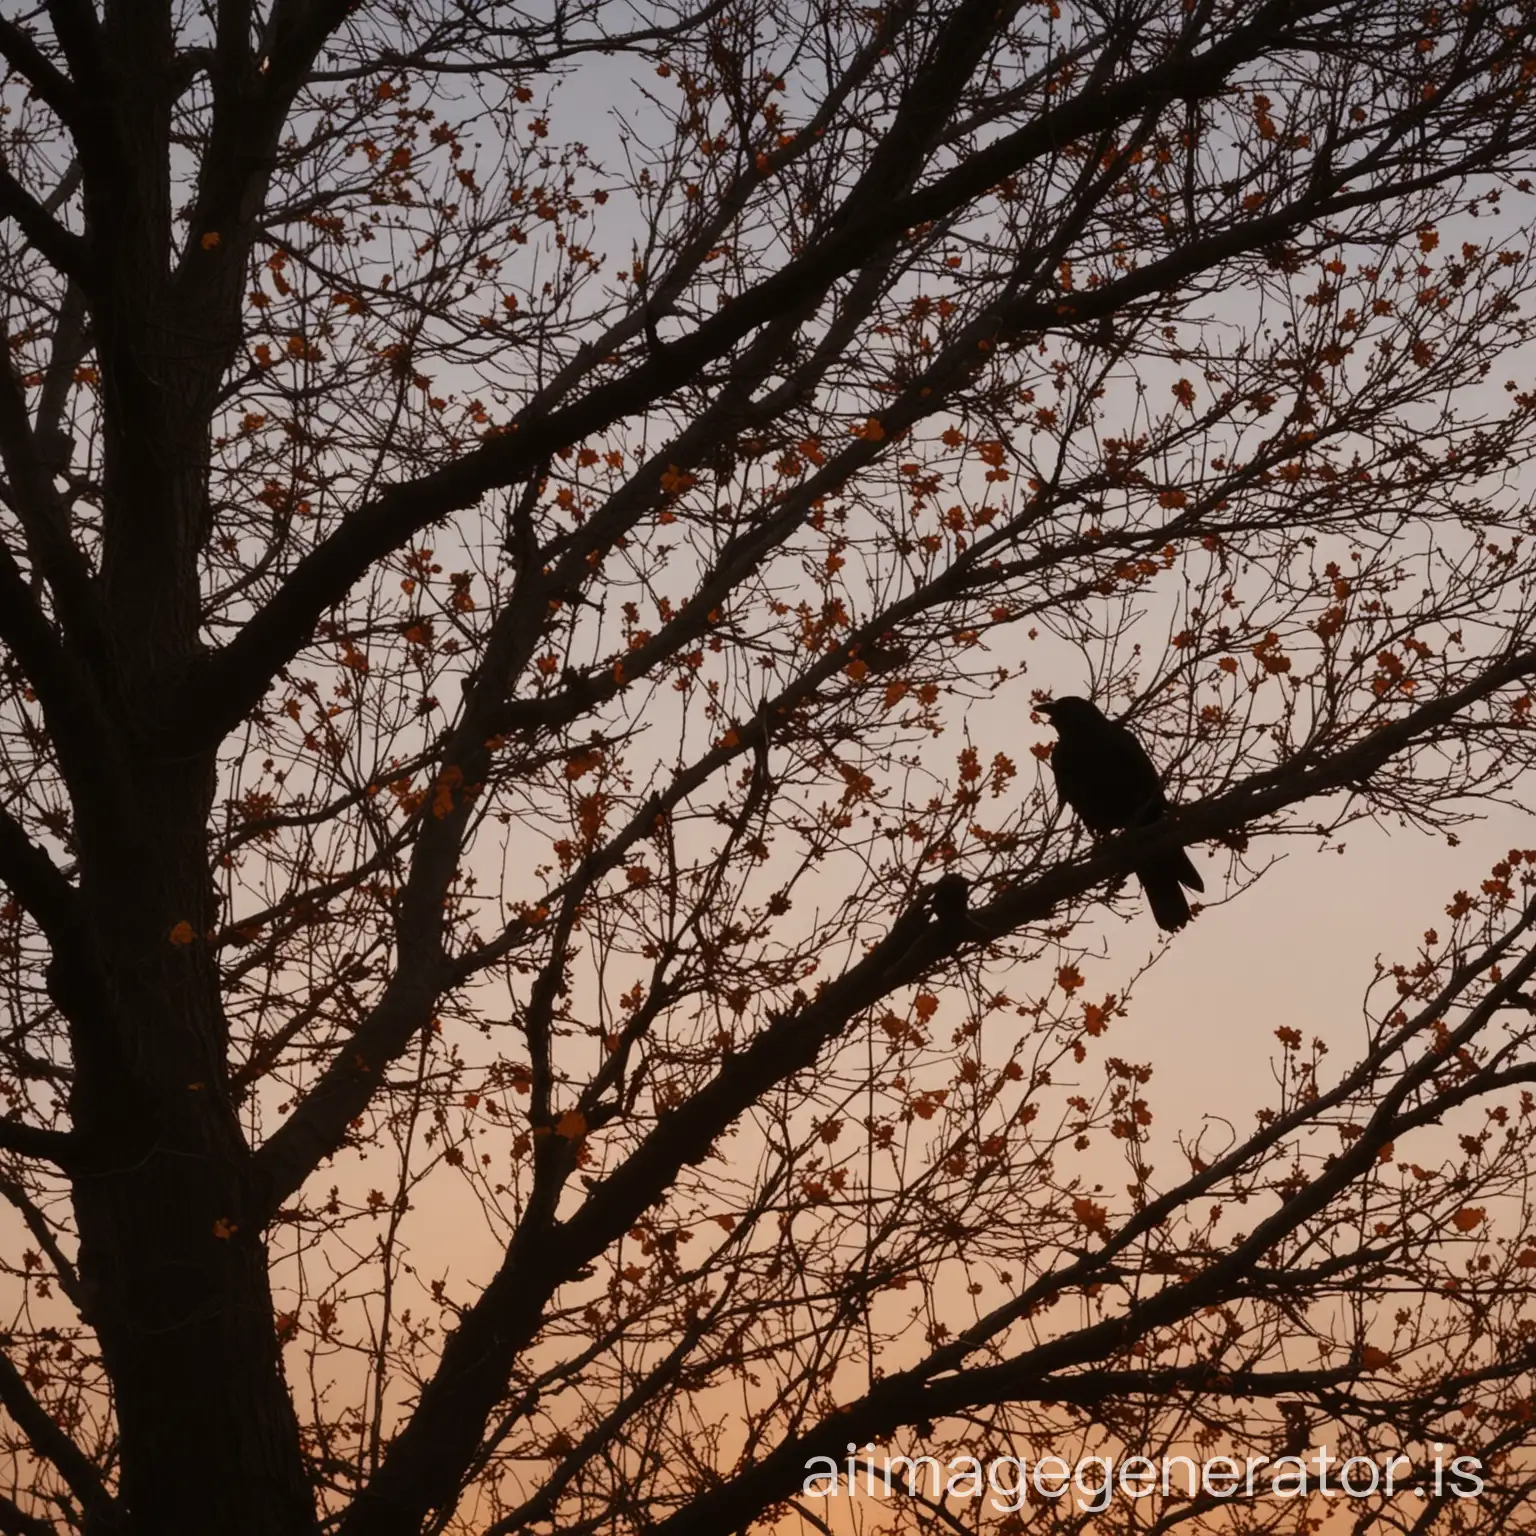 这时光，已经是垂暮了。傍晚的风吹动着木叶，簌簌地响个不停。乌鸦都在树头上打着围，唶唶地乱噪着，一缕阳光从树叶缝中照下在她的残花的脸上。